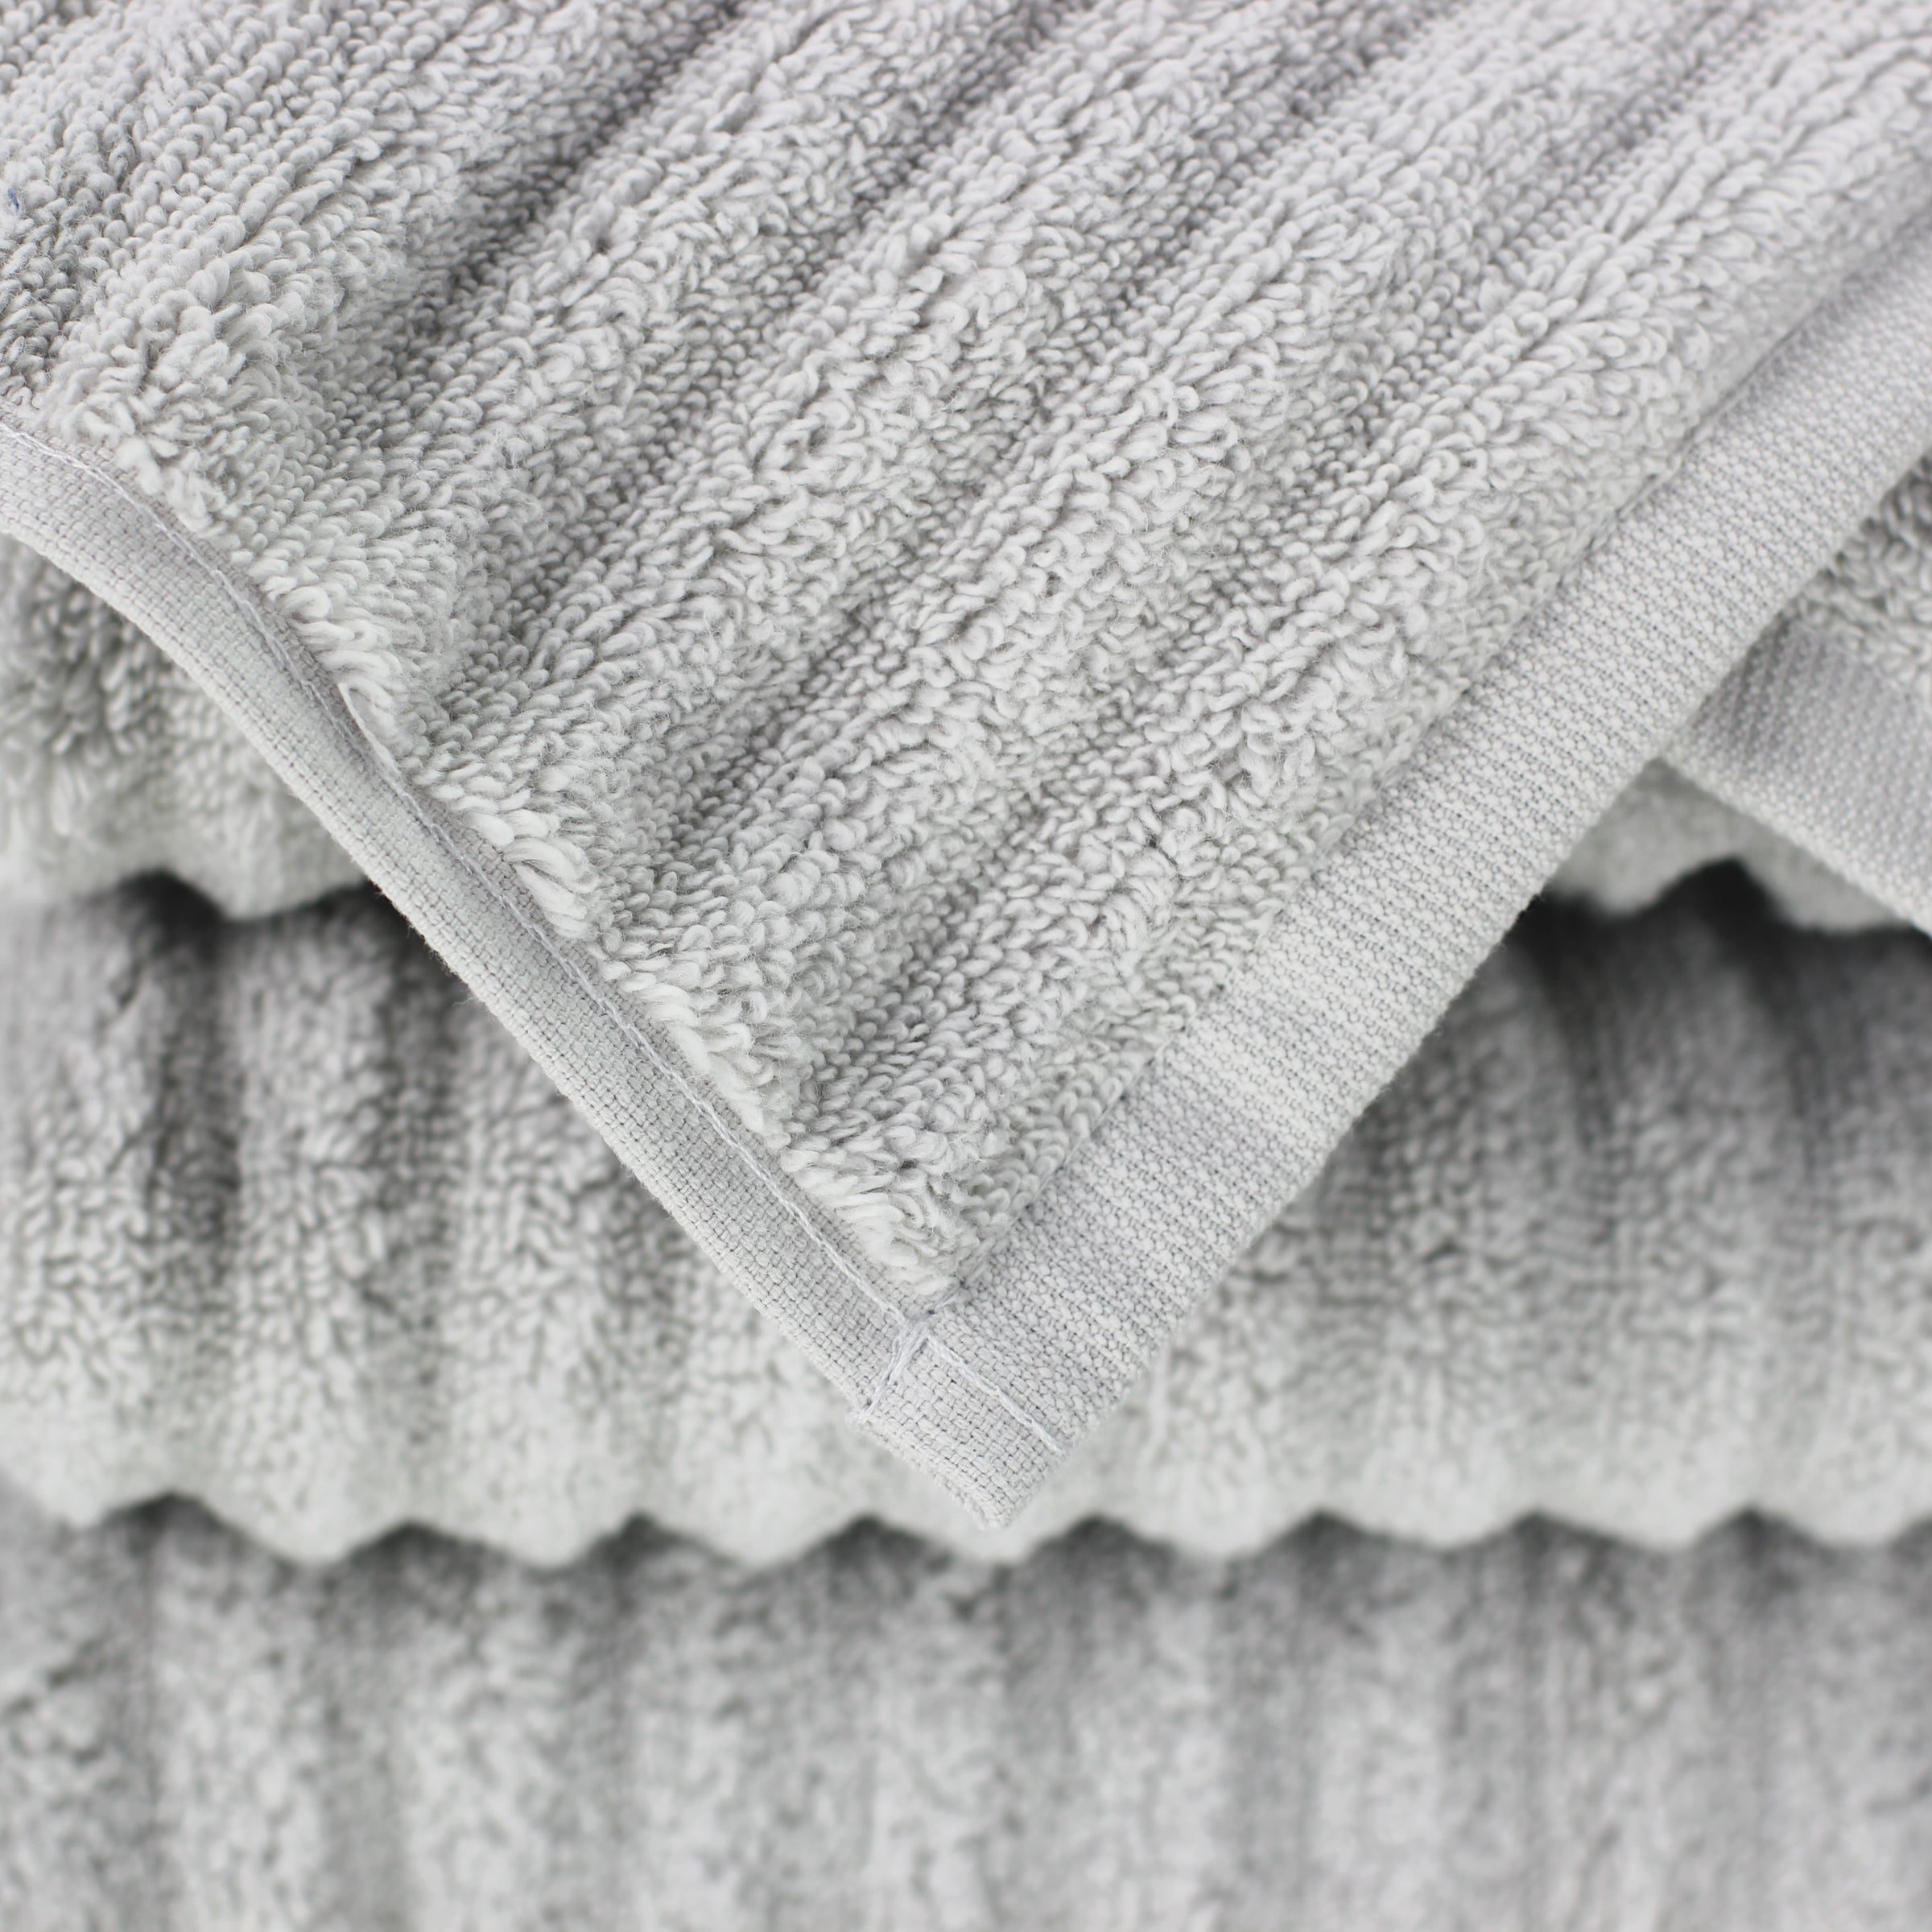 100% Genuine Turkish Cotton Capparis Kitchen Towels (Set of 2)